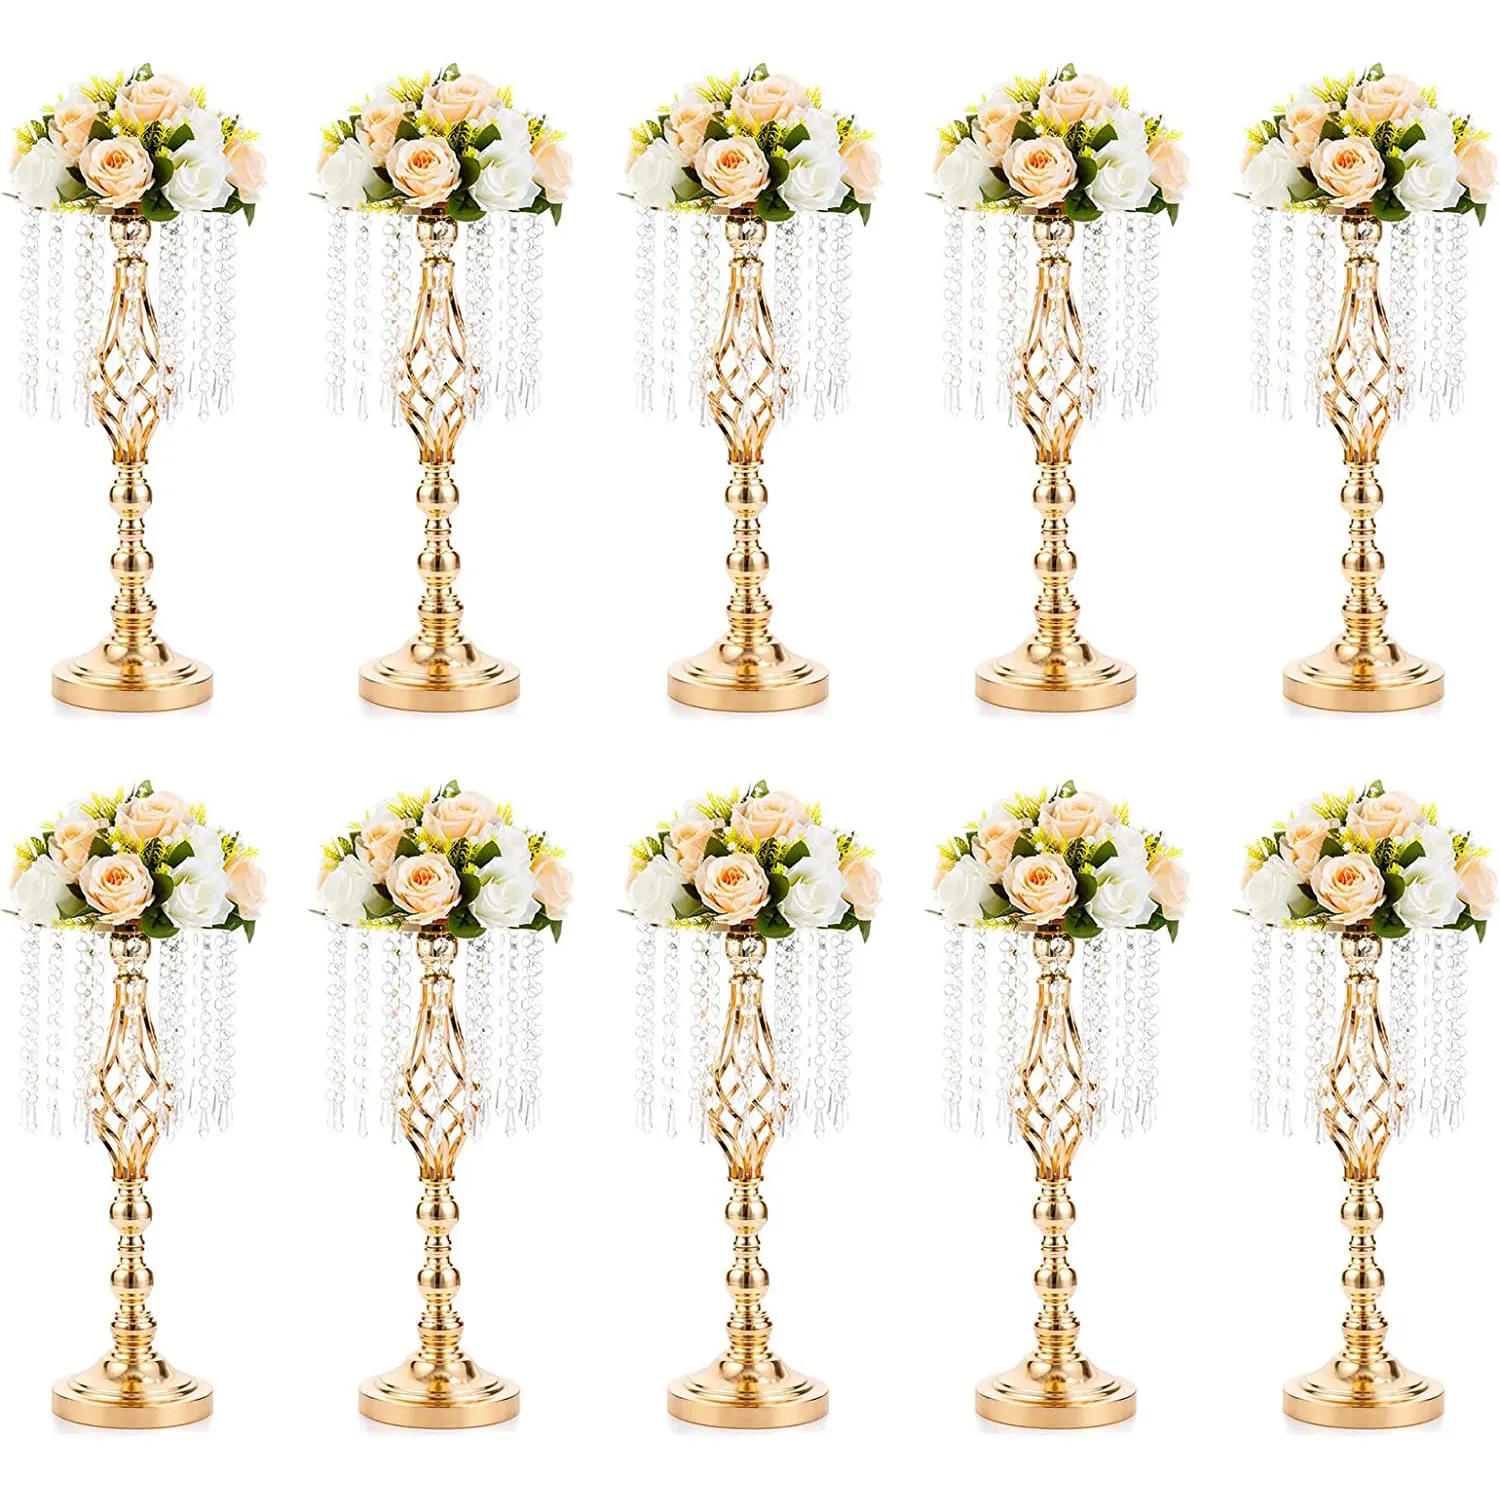 Nicro – centres de Table de fête de mariage, support de fleurs en métal de luxe, cadre de fleurs avec chaîne en cristal pour la décoration de la maison de l'hôtel